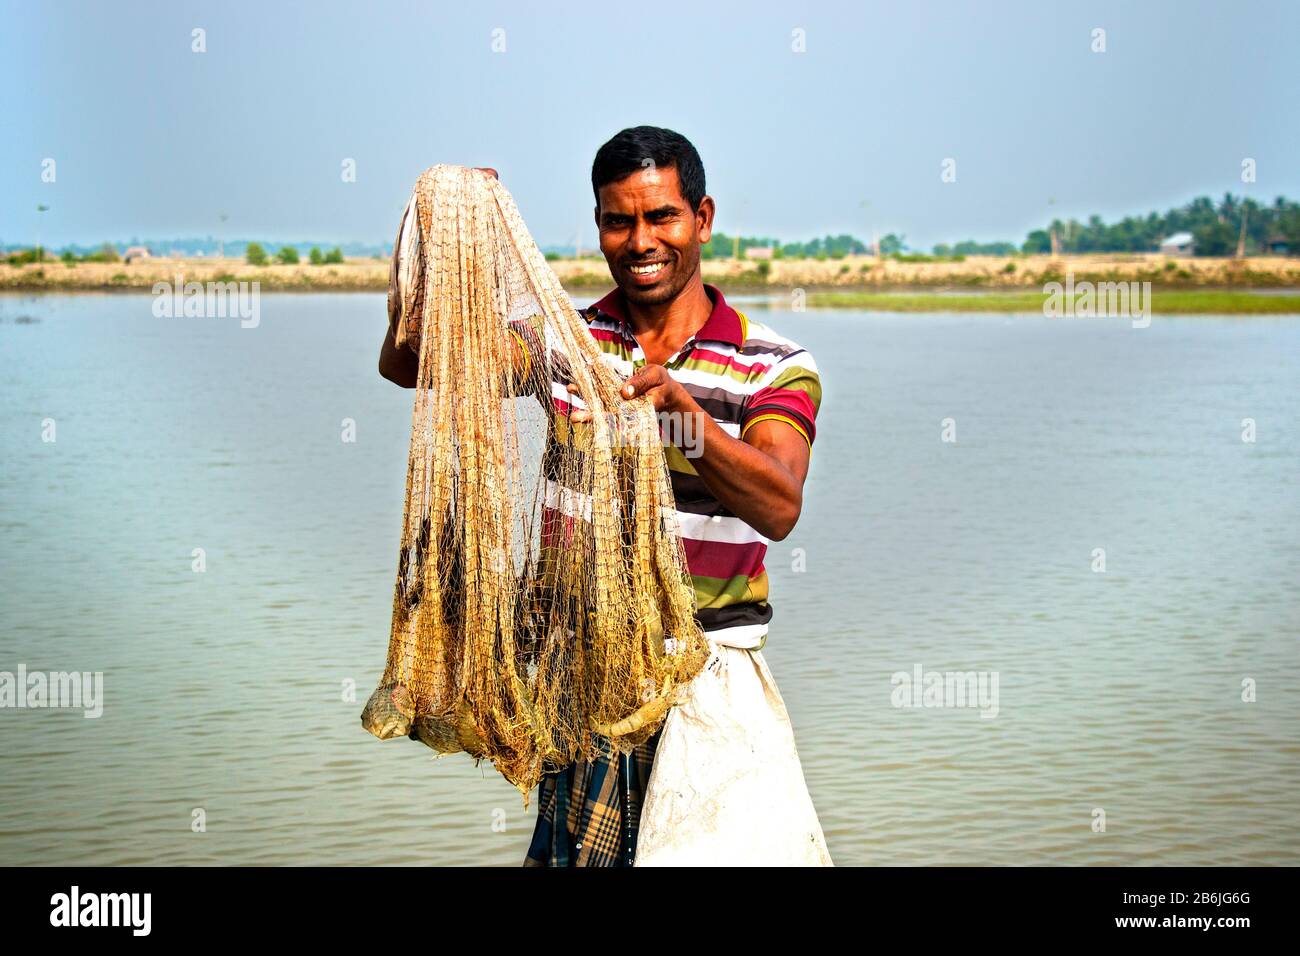 Ein Fischbauer zeigt seine Ernte mit glücklichen Gesichtes. Es gibt einige Garnelen in seinem Netz. Garnelen und Garnelen nannten weißes Gold für bangladeschische Wirtschaft. Stockfoto